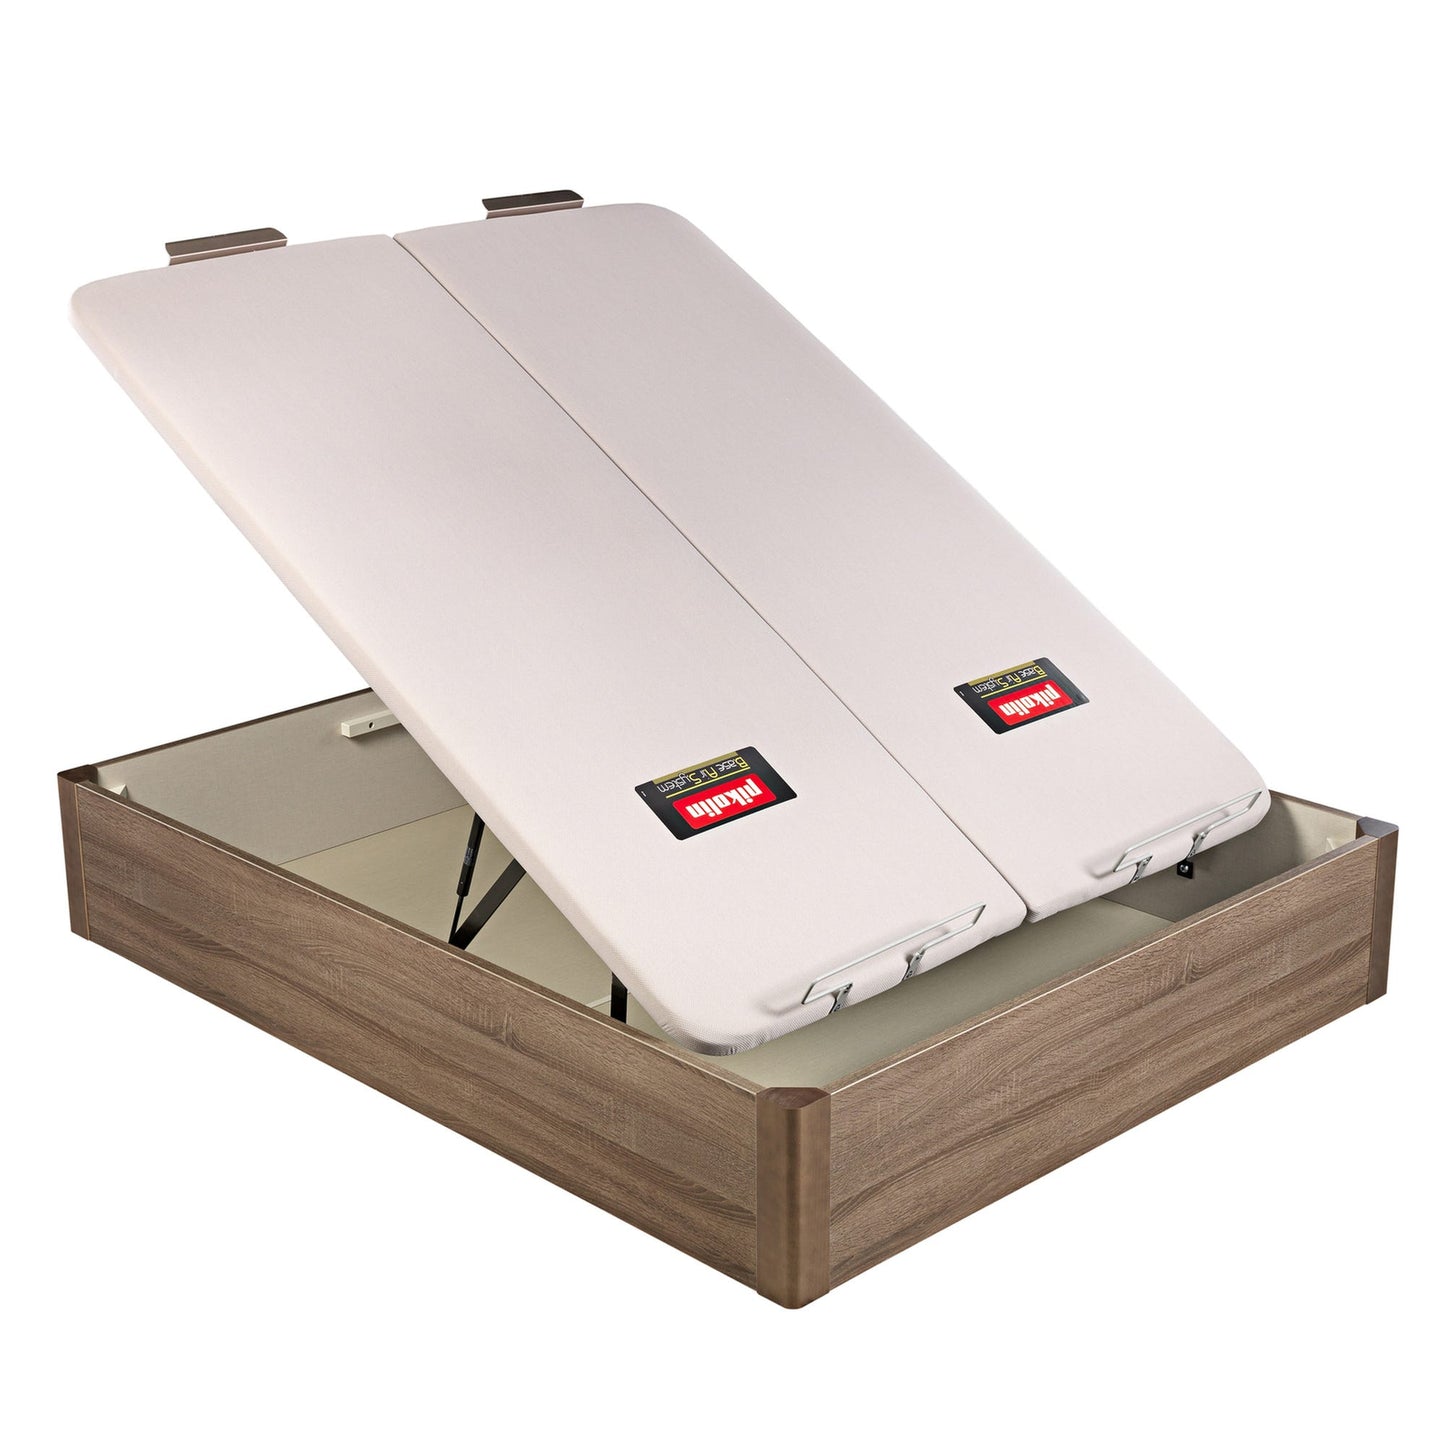 Canapé abatible de madera de tapa doble de color roble - DESIGN - 150x200